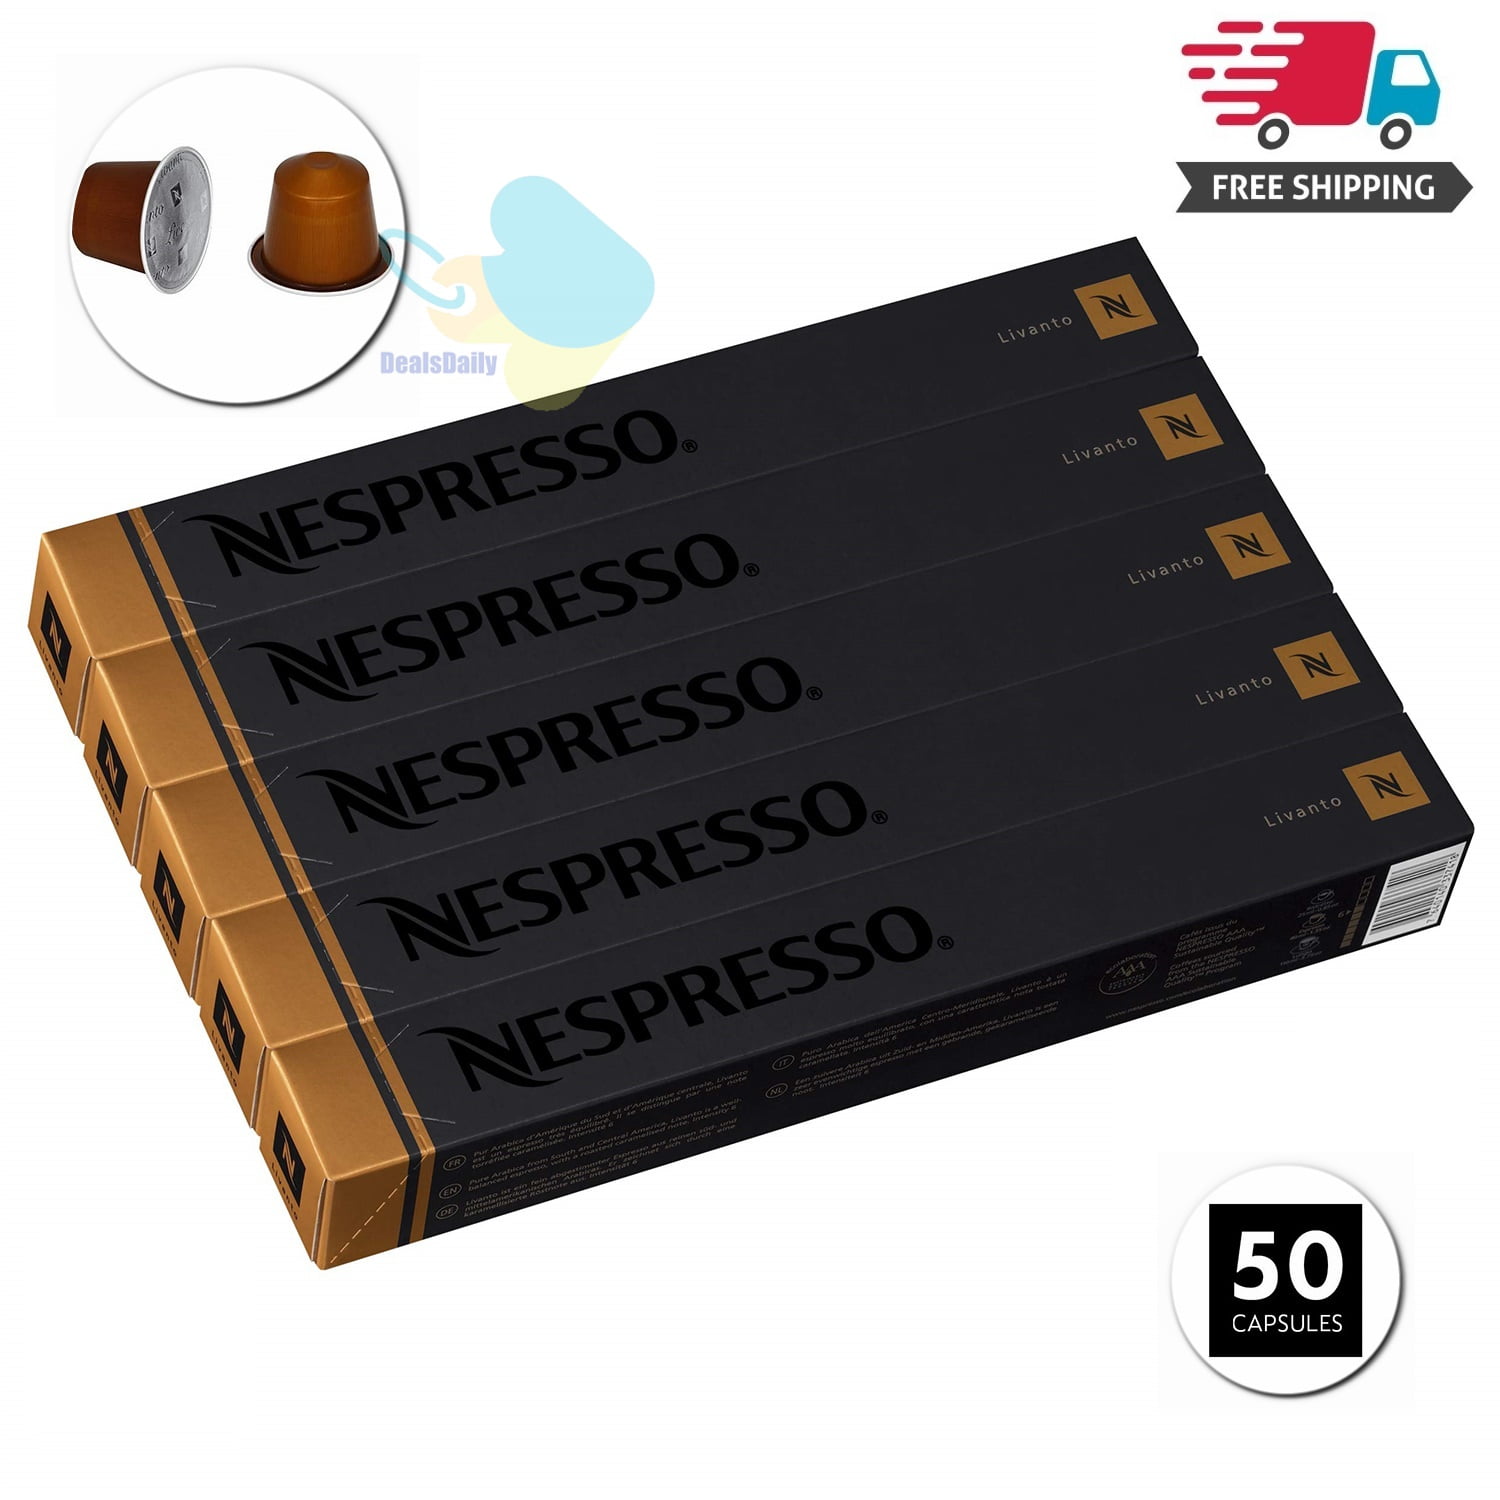 Nespresso Professional Lungo Leggero - 50 Pods : Grocery & Gourmet Food -  .com